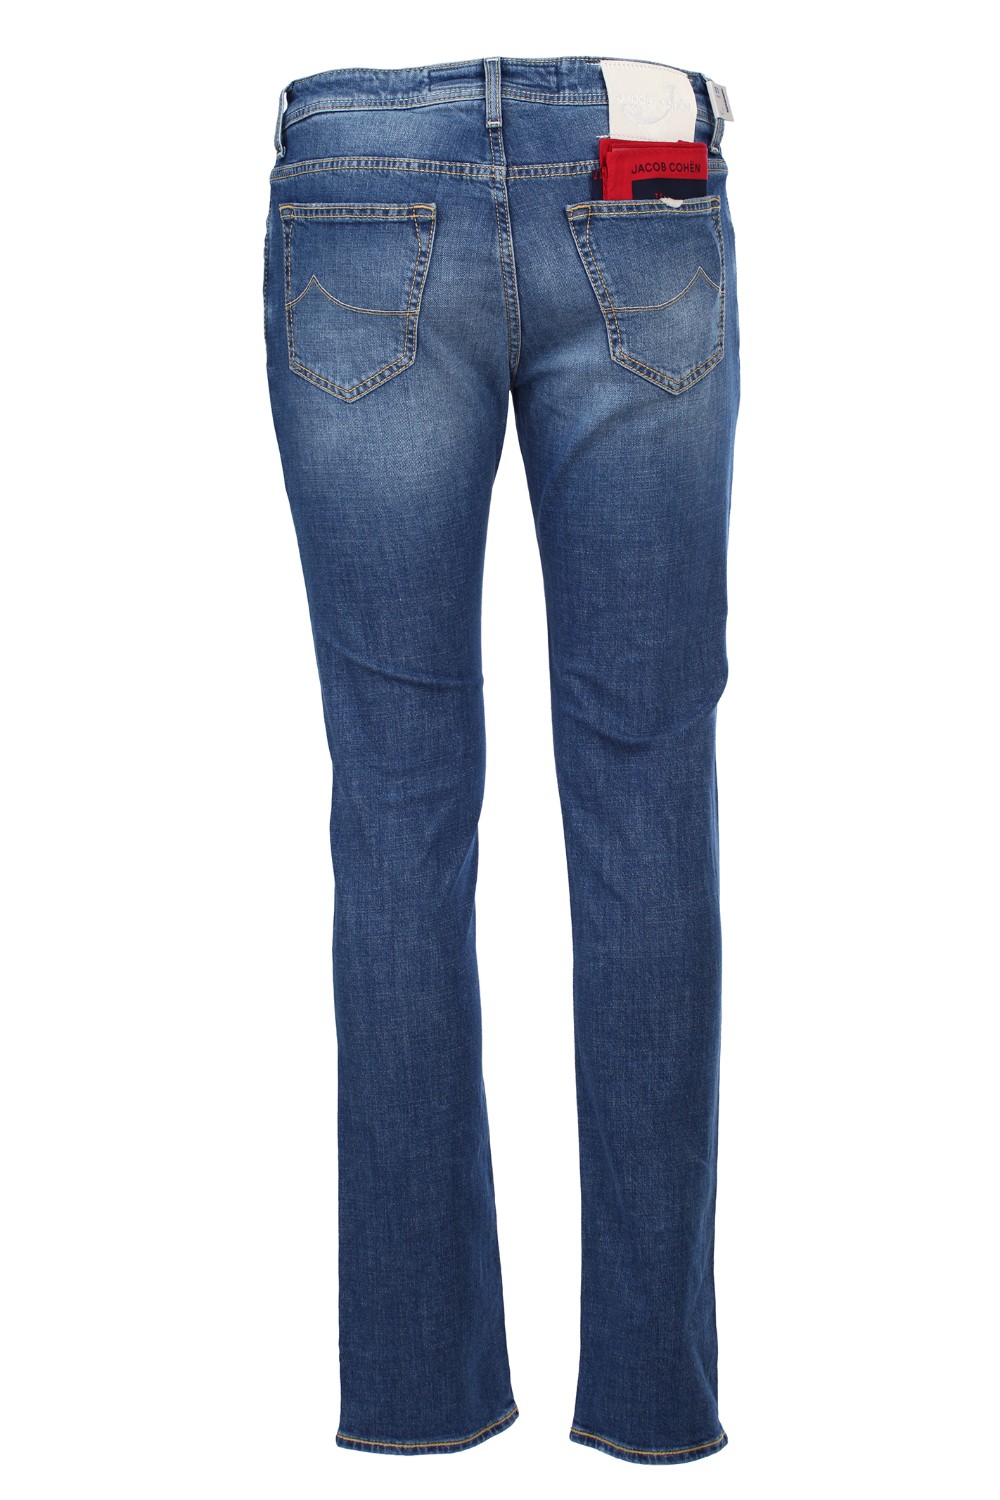 shop JACOB COHEN Saldi Jeans: Jacob Cohen jeans in misto cotone con finiture di colore rosso.
Modello slim cinque tasche.
Chiusura con zip e bottone.
Lunghezza alla caviglia.
Vestibilità slim.
Composizione: 92% cotone 6% poliestere 2% elastan.
Made in Italy.. J688 COMF 01190-004CHIARO number 4487324